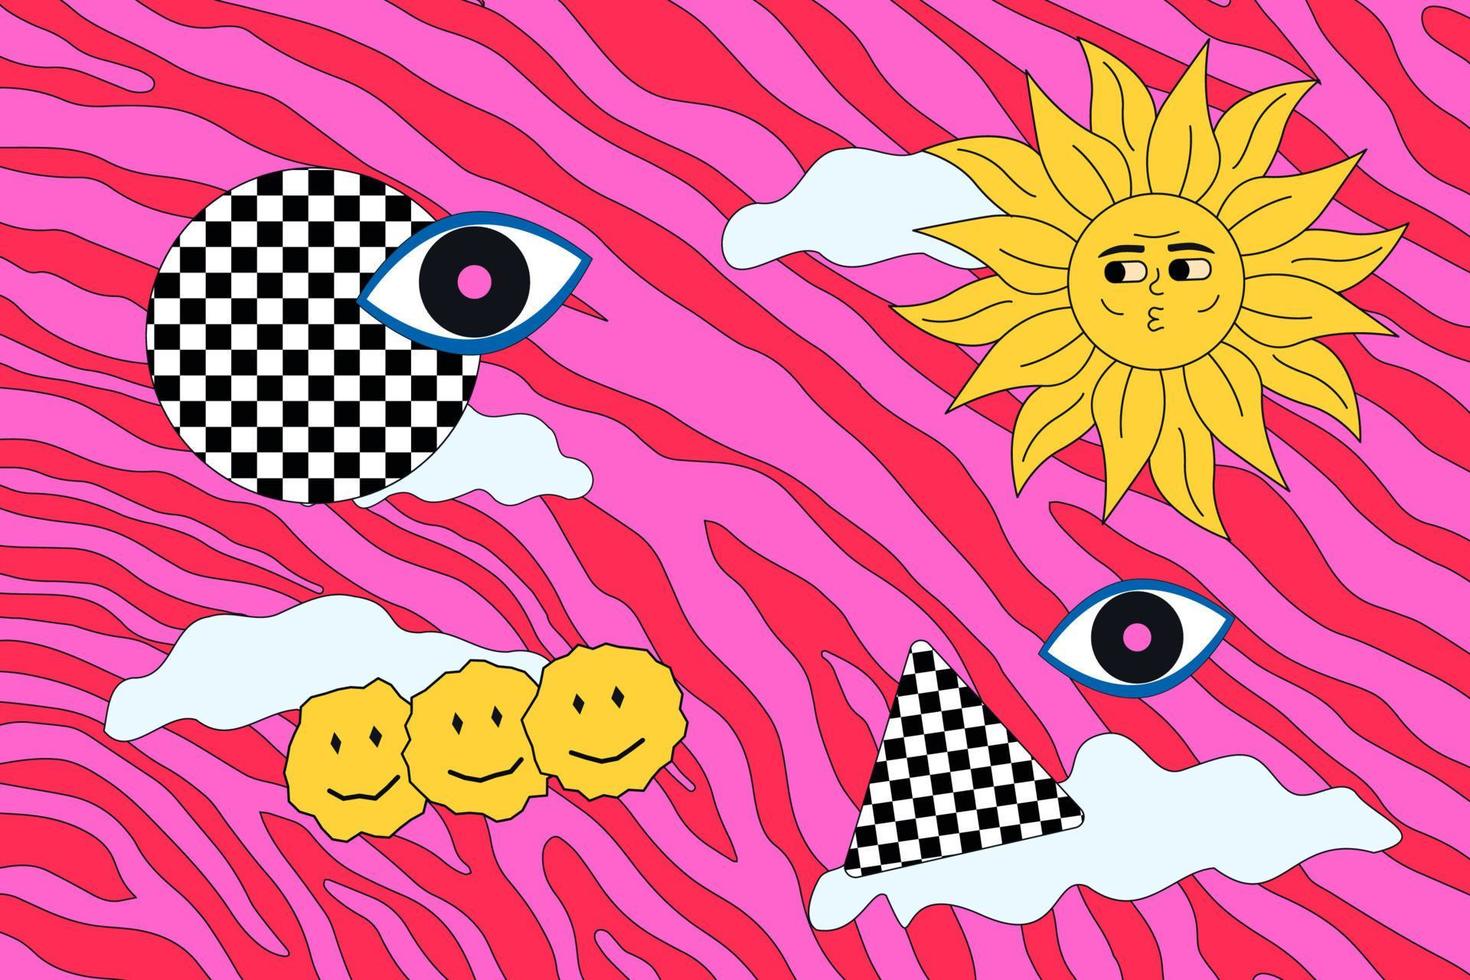 illustration abstraite groovy et hippie, soleil joyeux sur fond de zèbre acide. oeuvre psychédélique avec emoji et arc. vecteur